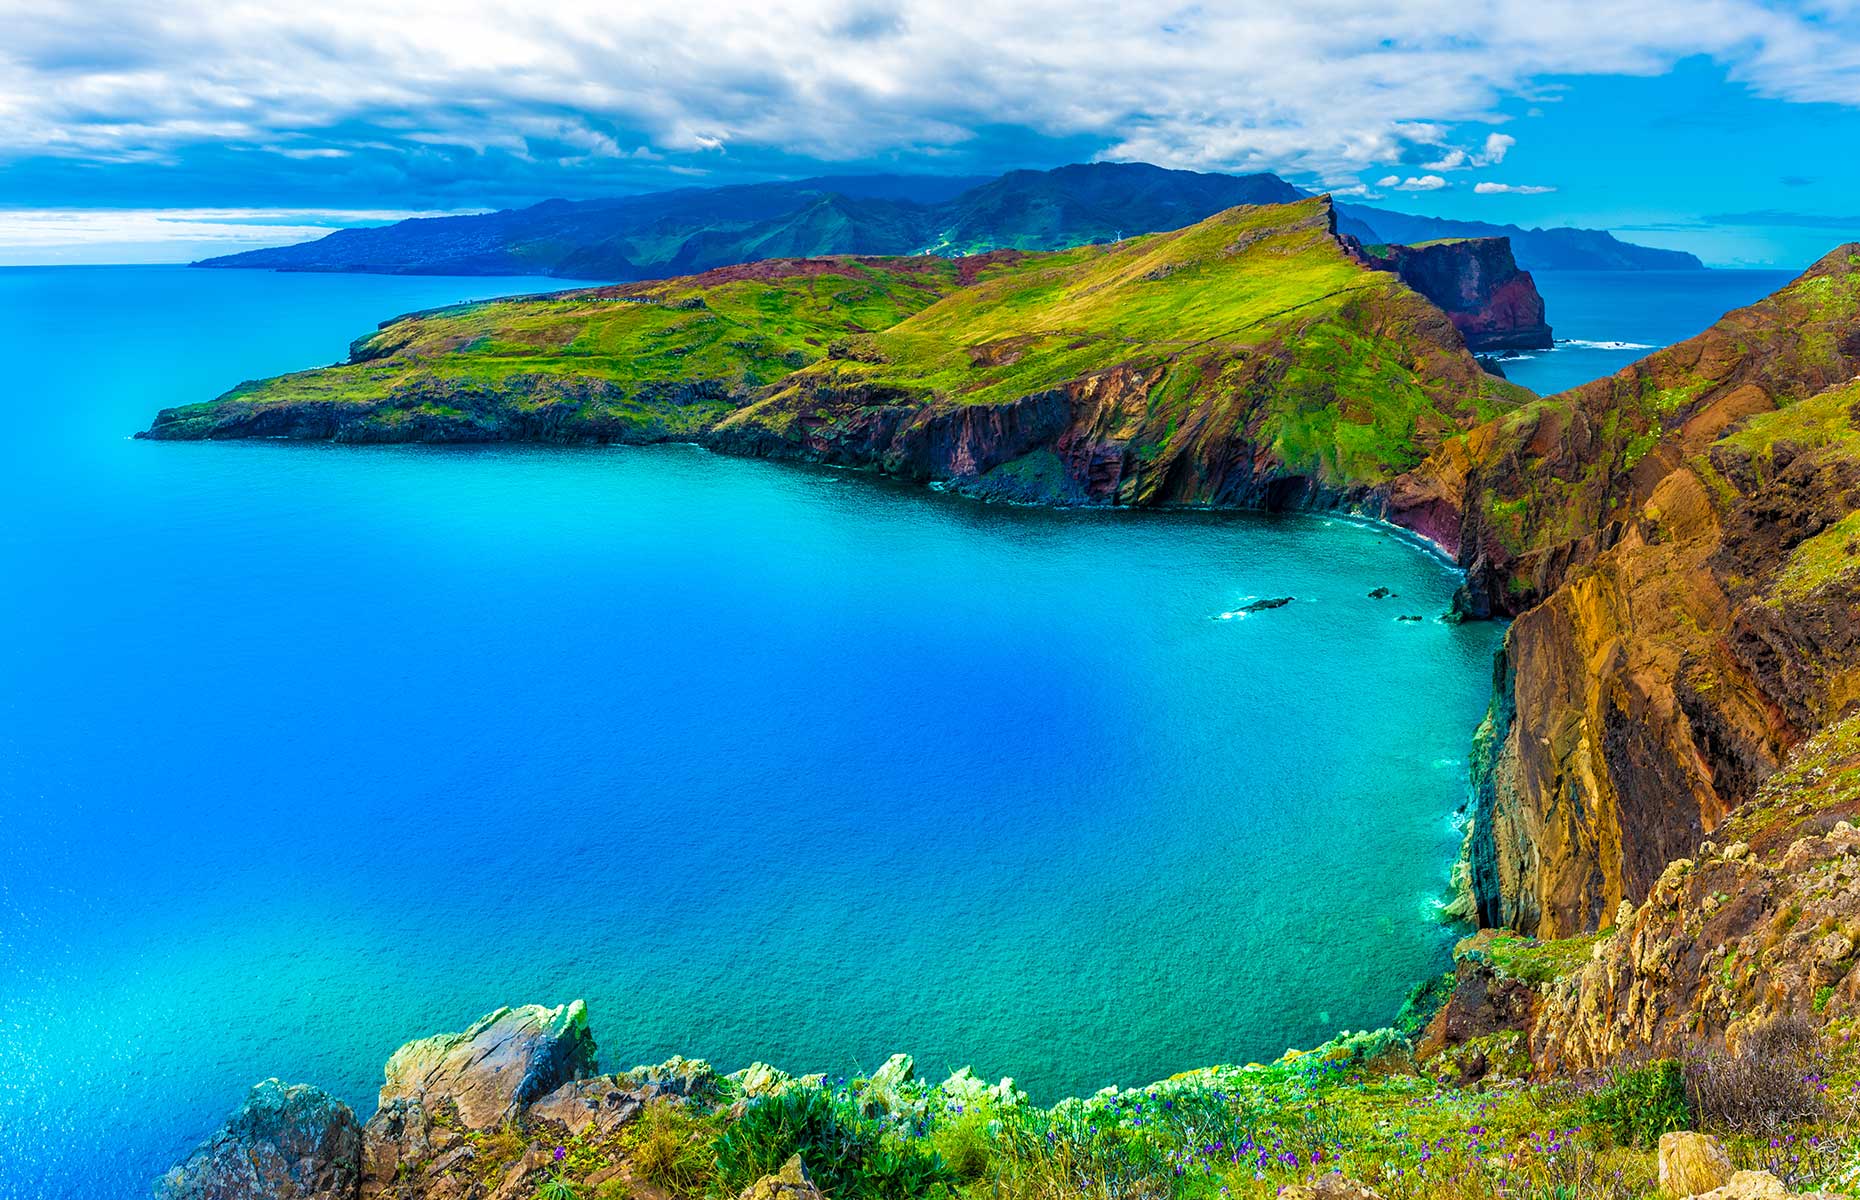 Ponta de Sao Lourenco, Madeira islands, Portugal (Image: Balate Dorin/Shutterstock)